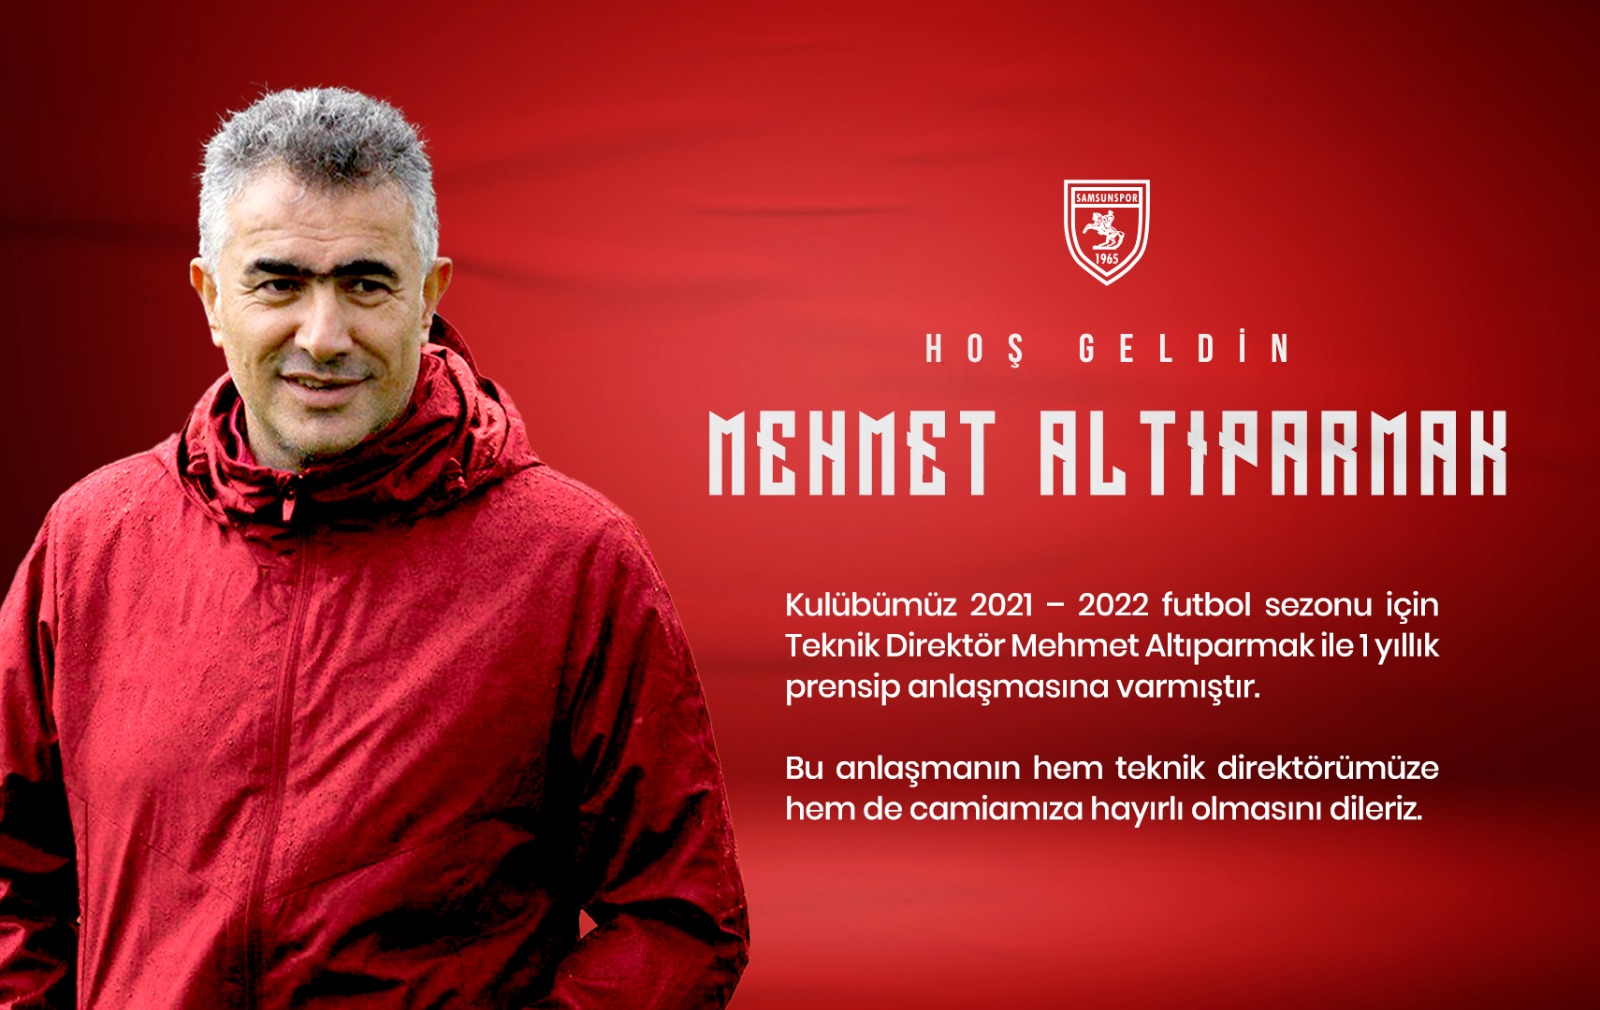 Samsunspor’un Teknik Direktör Mehmet Altıparmak